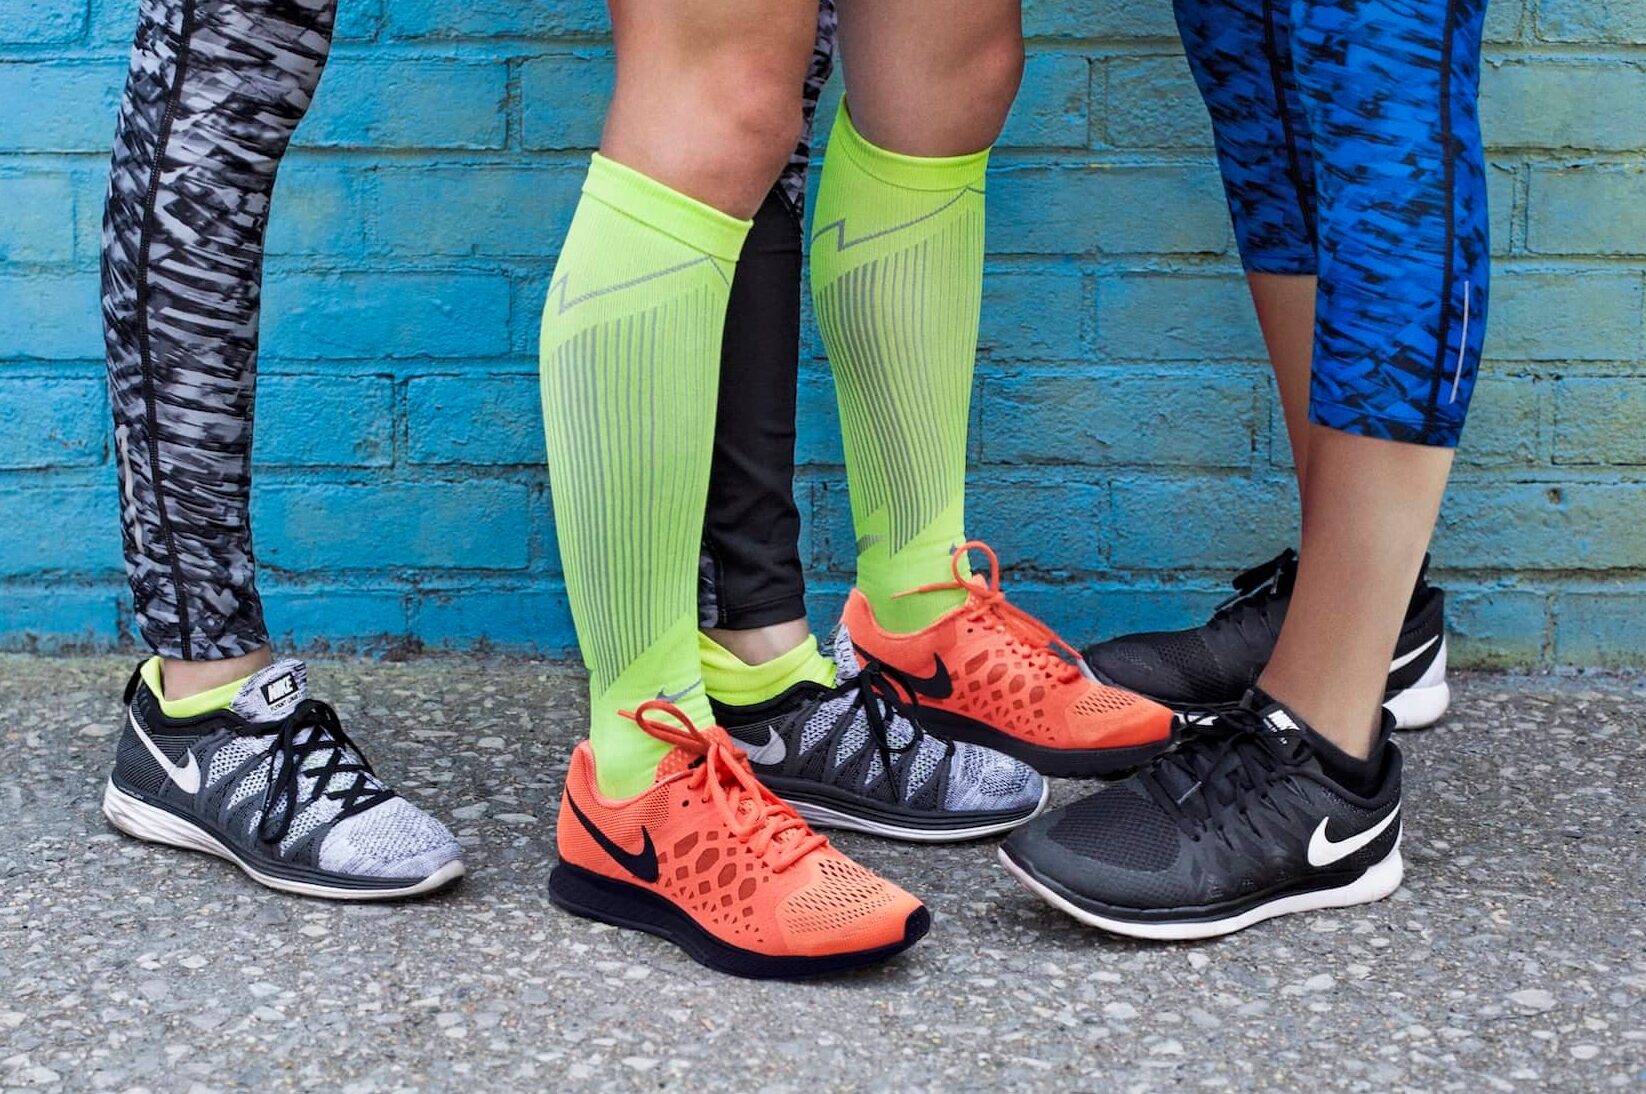 Zapatillas de tenis vs zapatillas de running: ¿Cuál elegir?